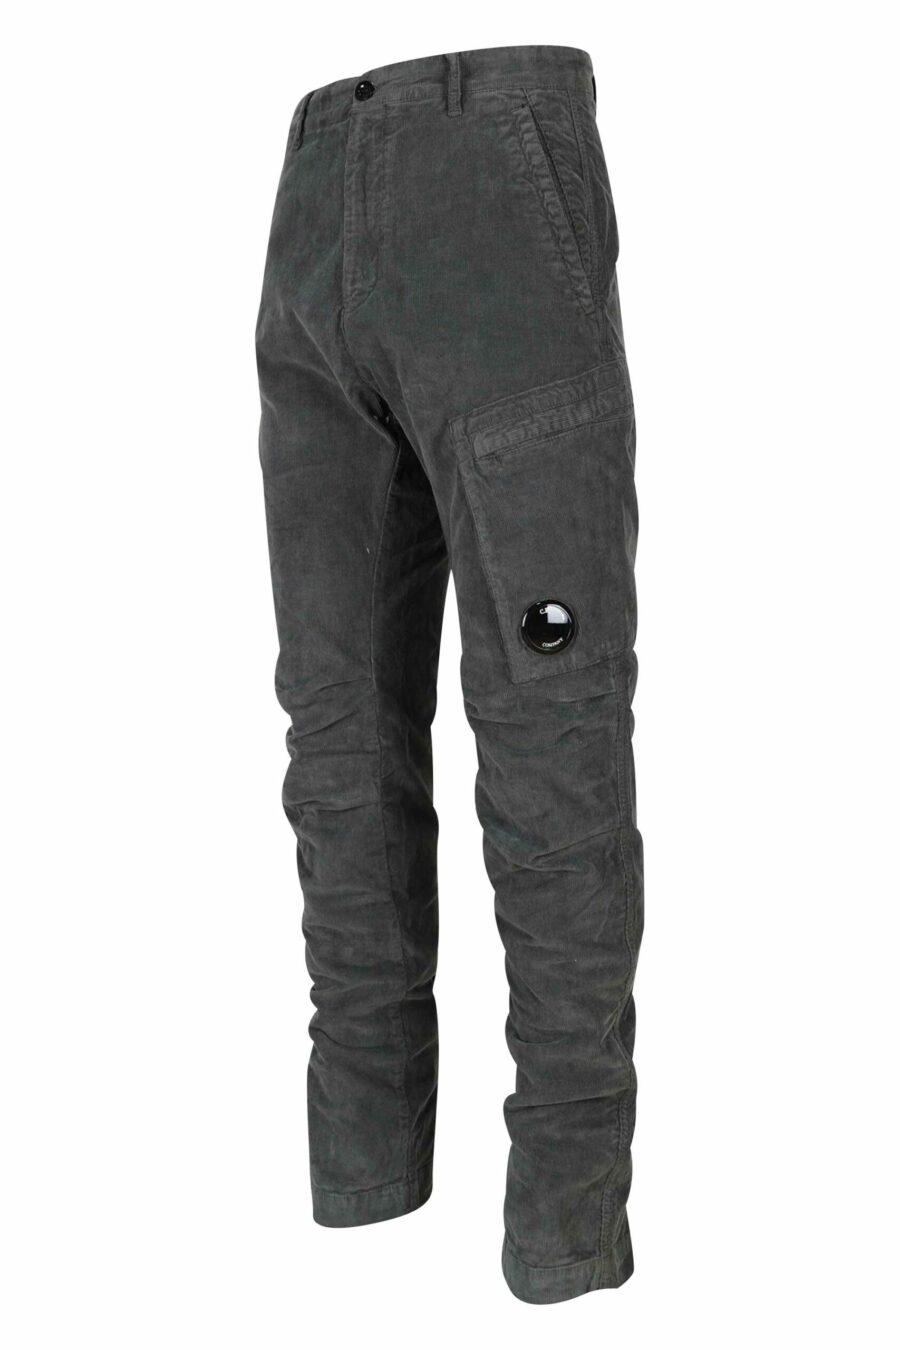 Pantalon gris en velours côtelé avec poche latérale et logo de l'objectif - 7620943650693 9 1 scaled